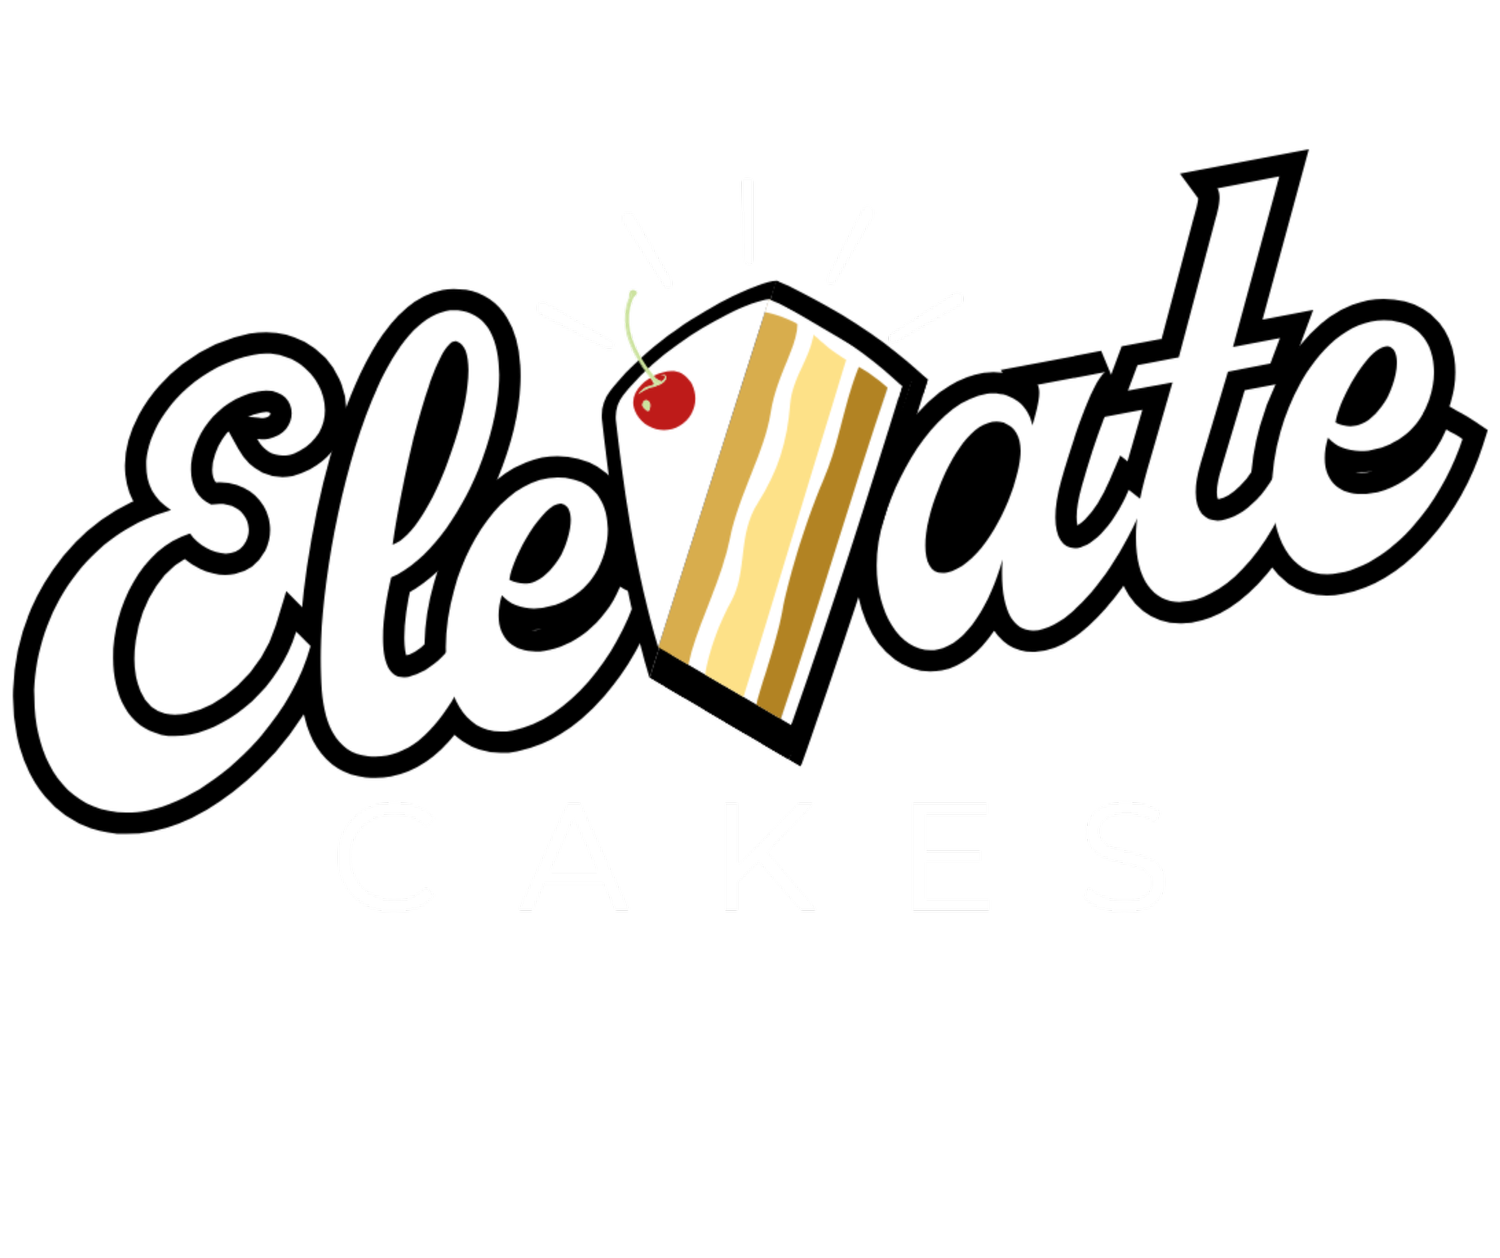 Elevate Cakes